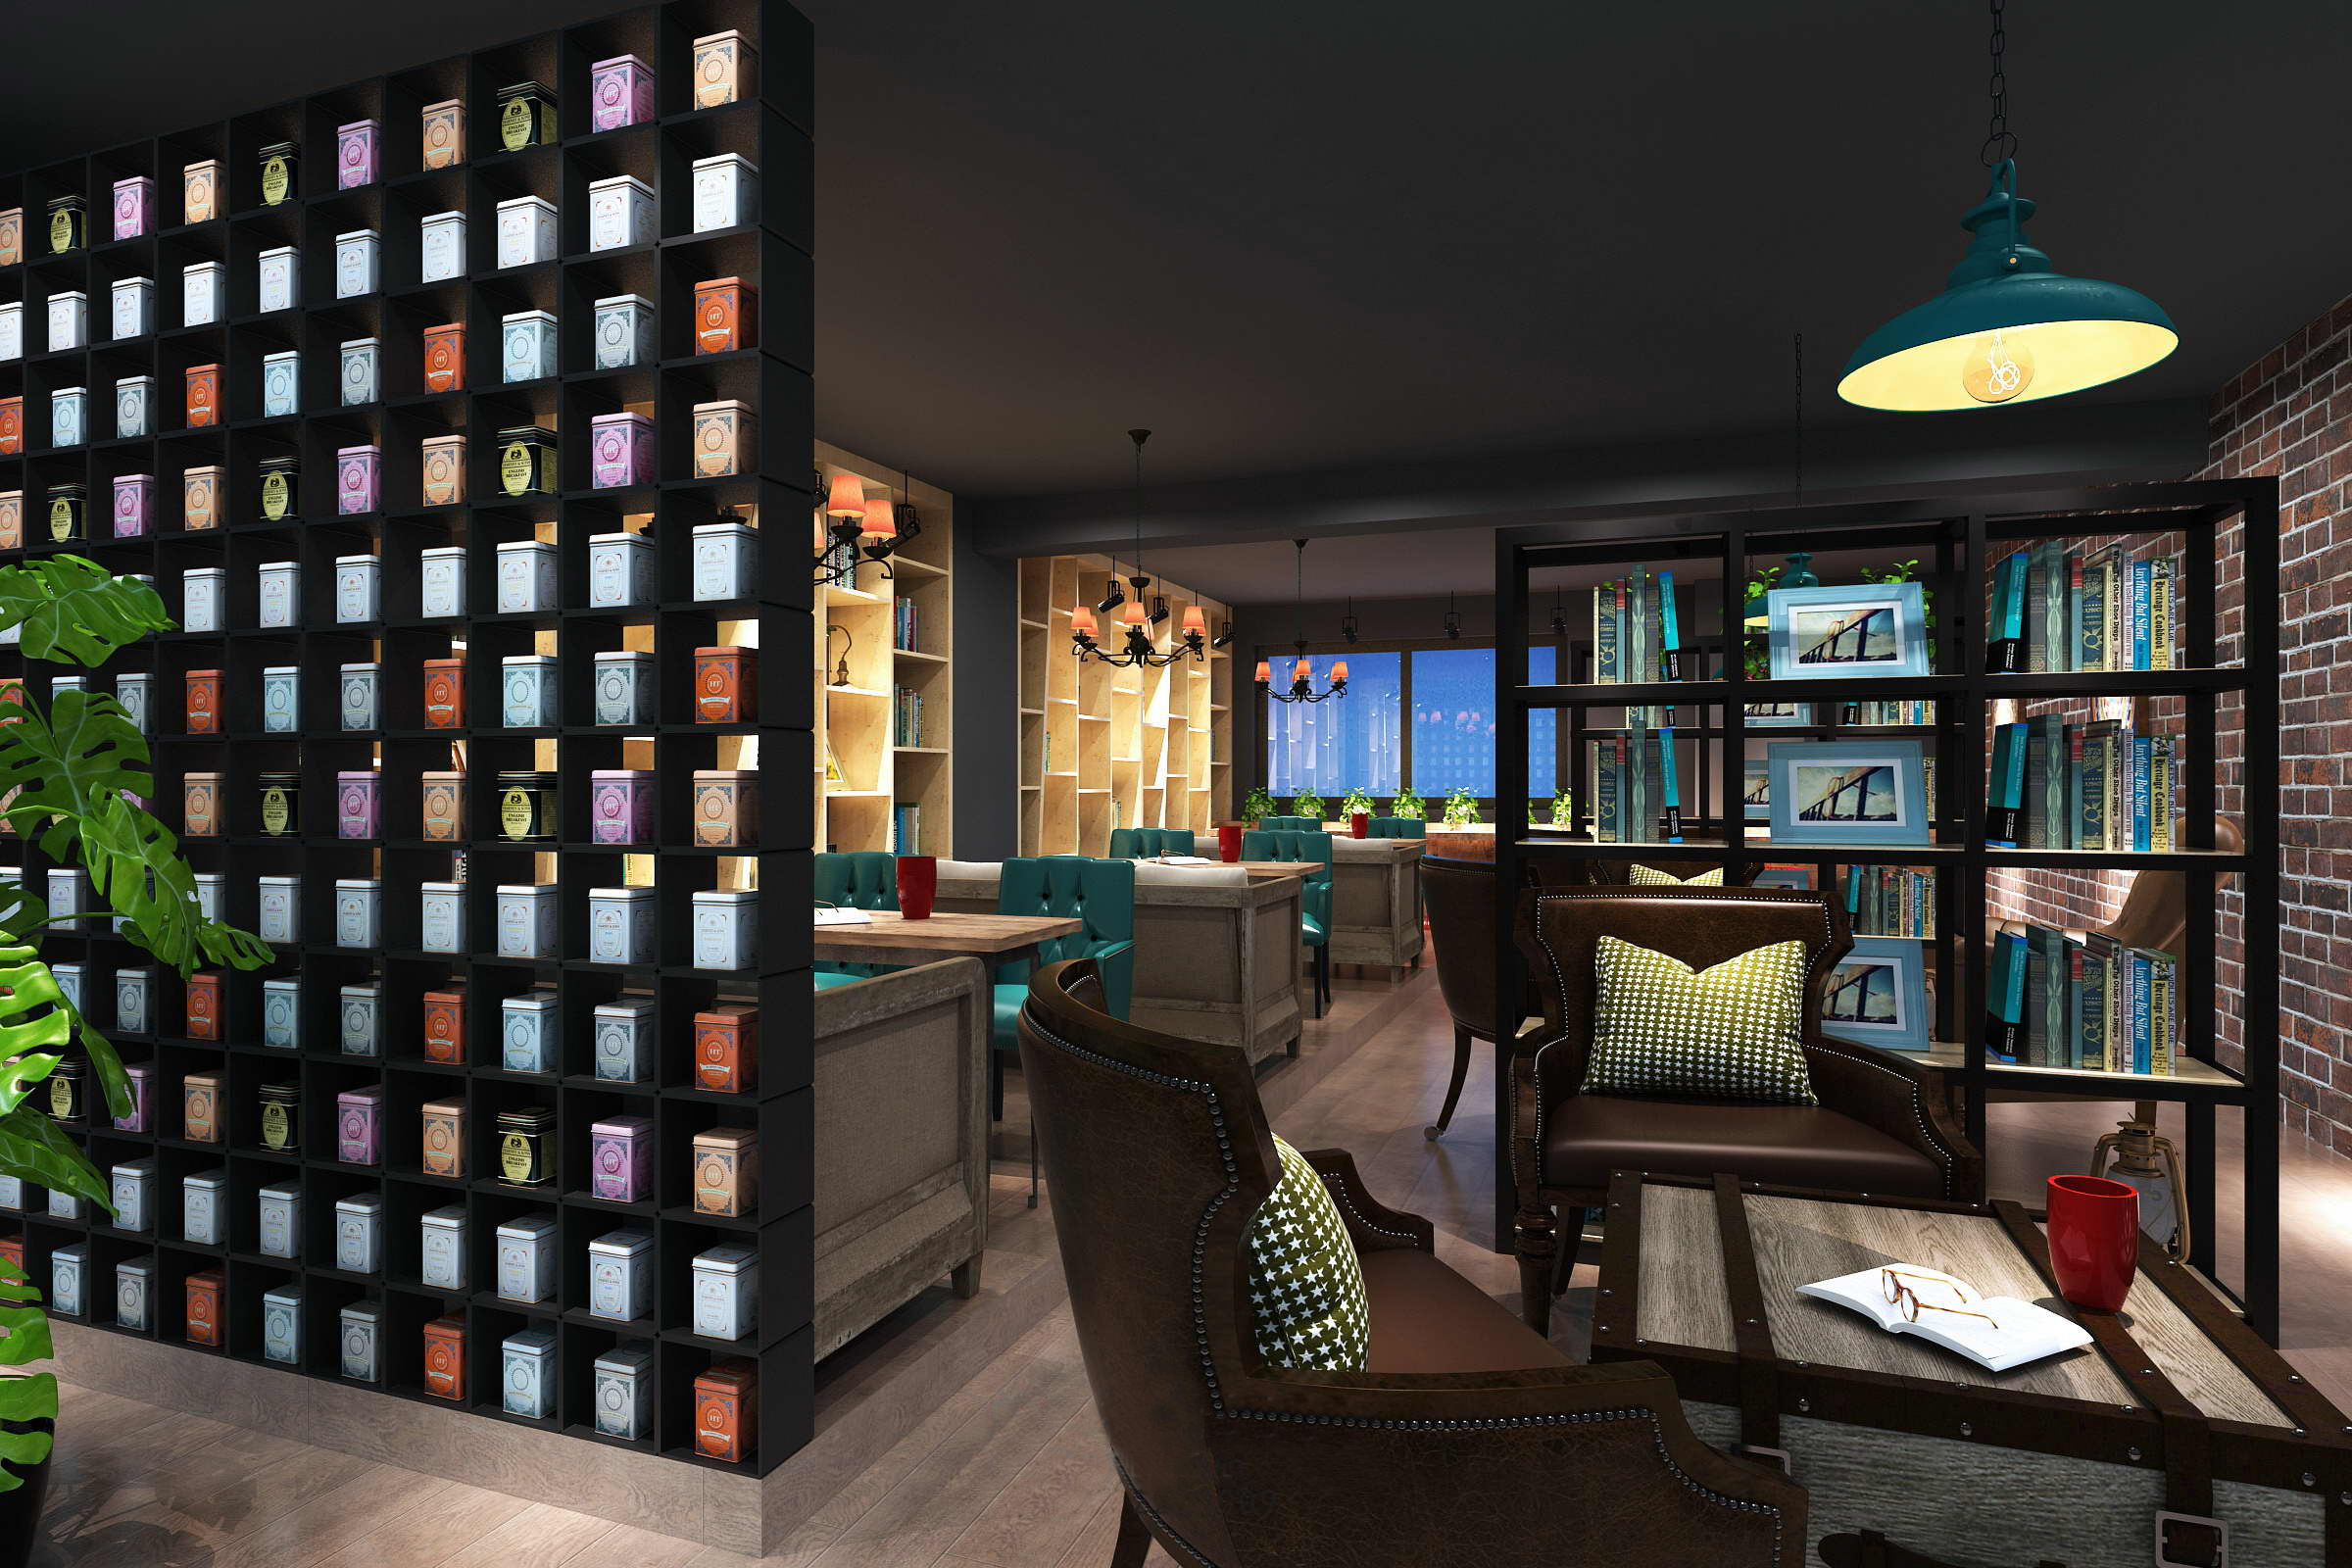 3dmax模型 中西餐厅咖啡厅茶楼店面loft工业风格3d室内模型素材 3D模型-第4张